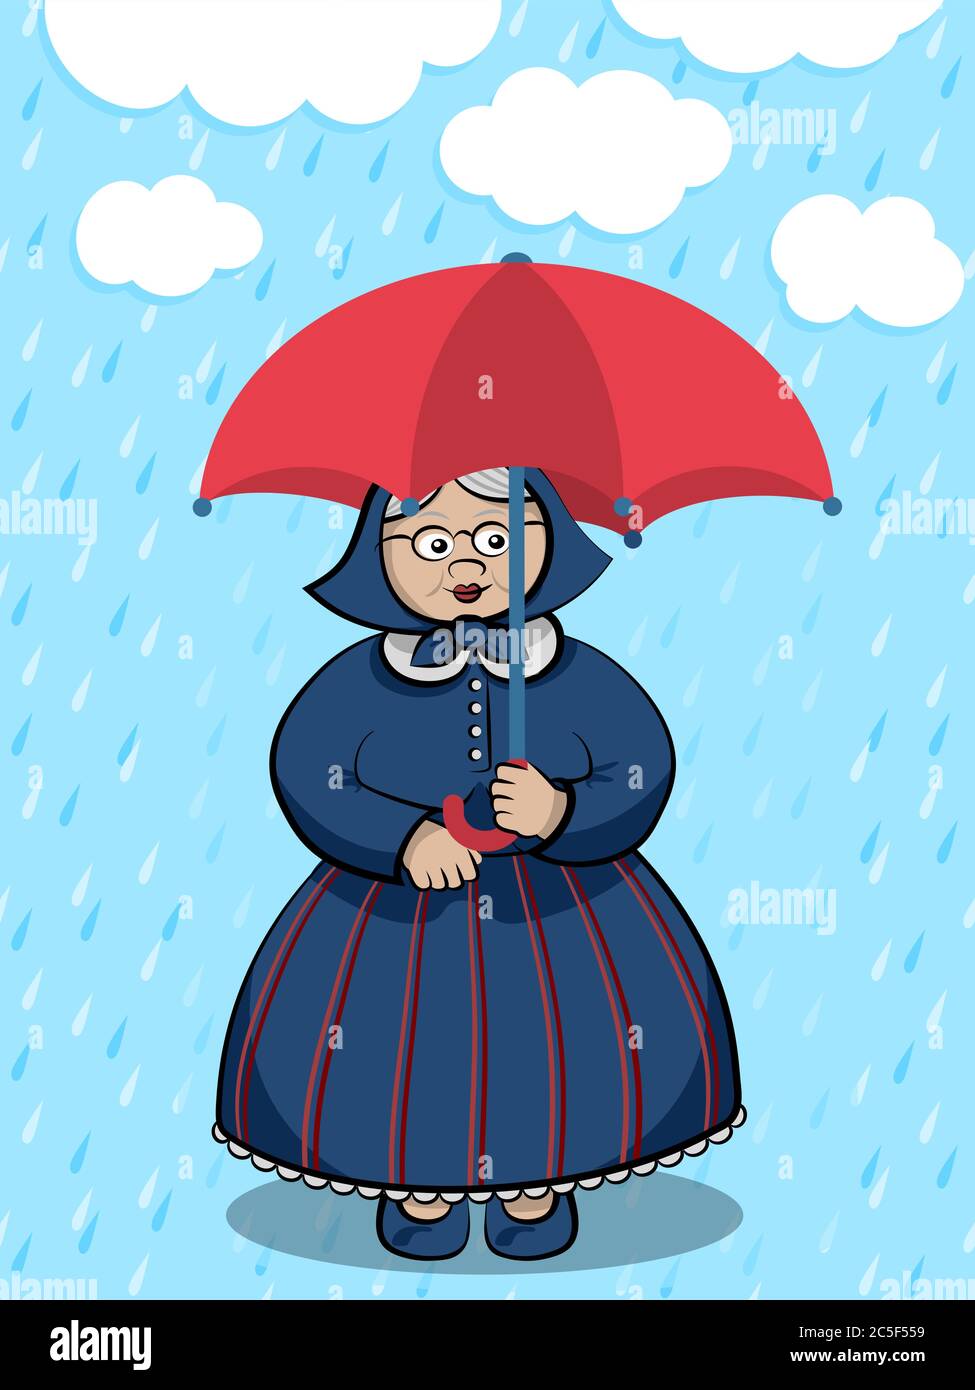 Personaggio Cartoon Funny Granny - Vecchia signora che rimane sotto la pioggia leggera con ombrello rosso Illustrazione Vettoriale